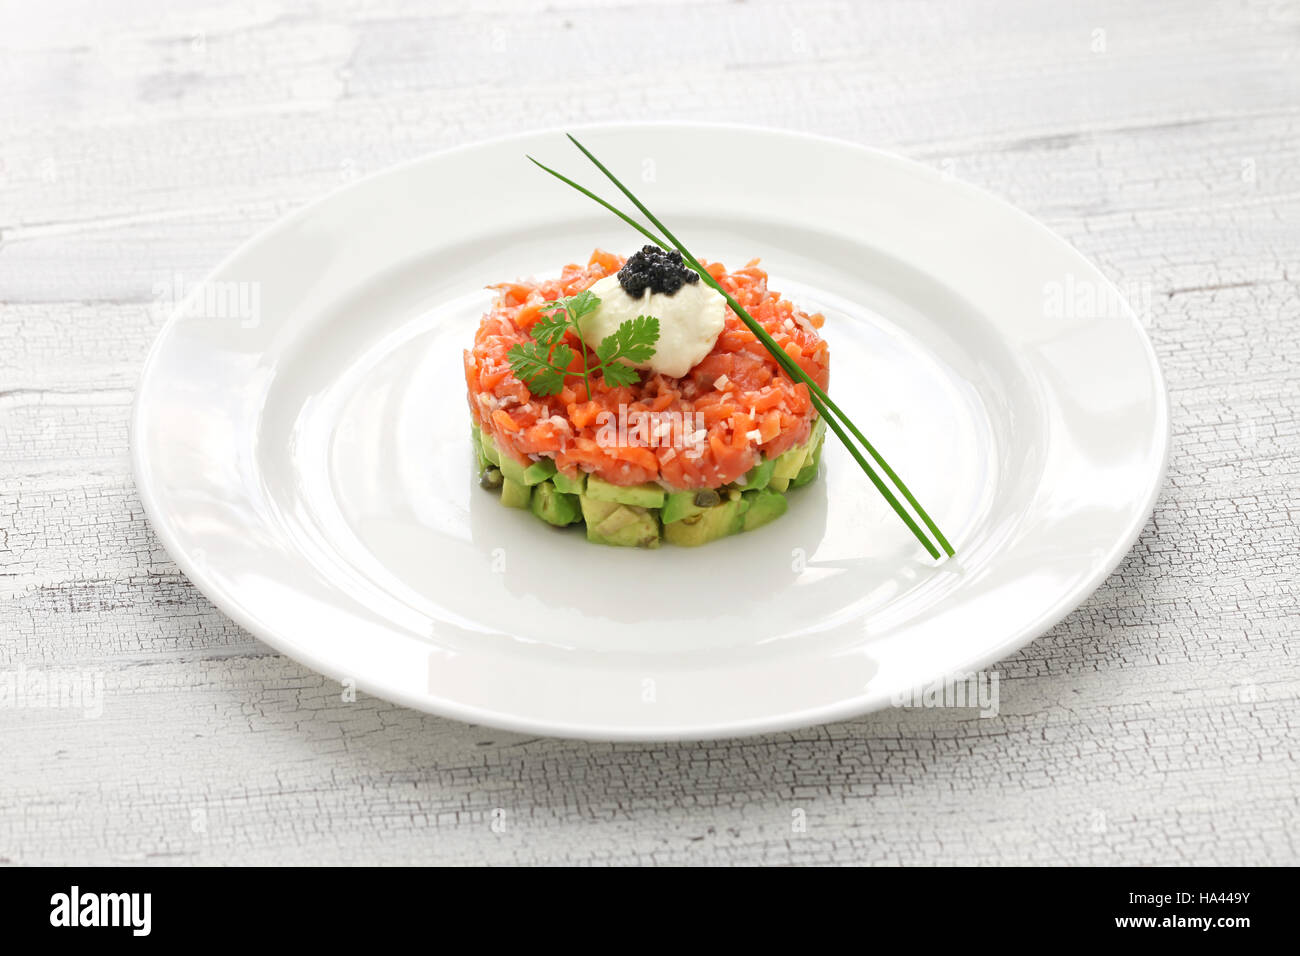 salmon tartare with avocado and caviar Stock Photo